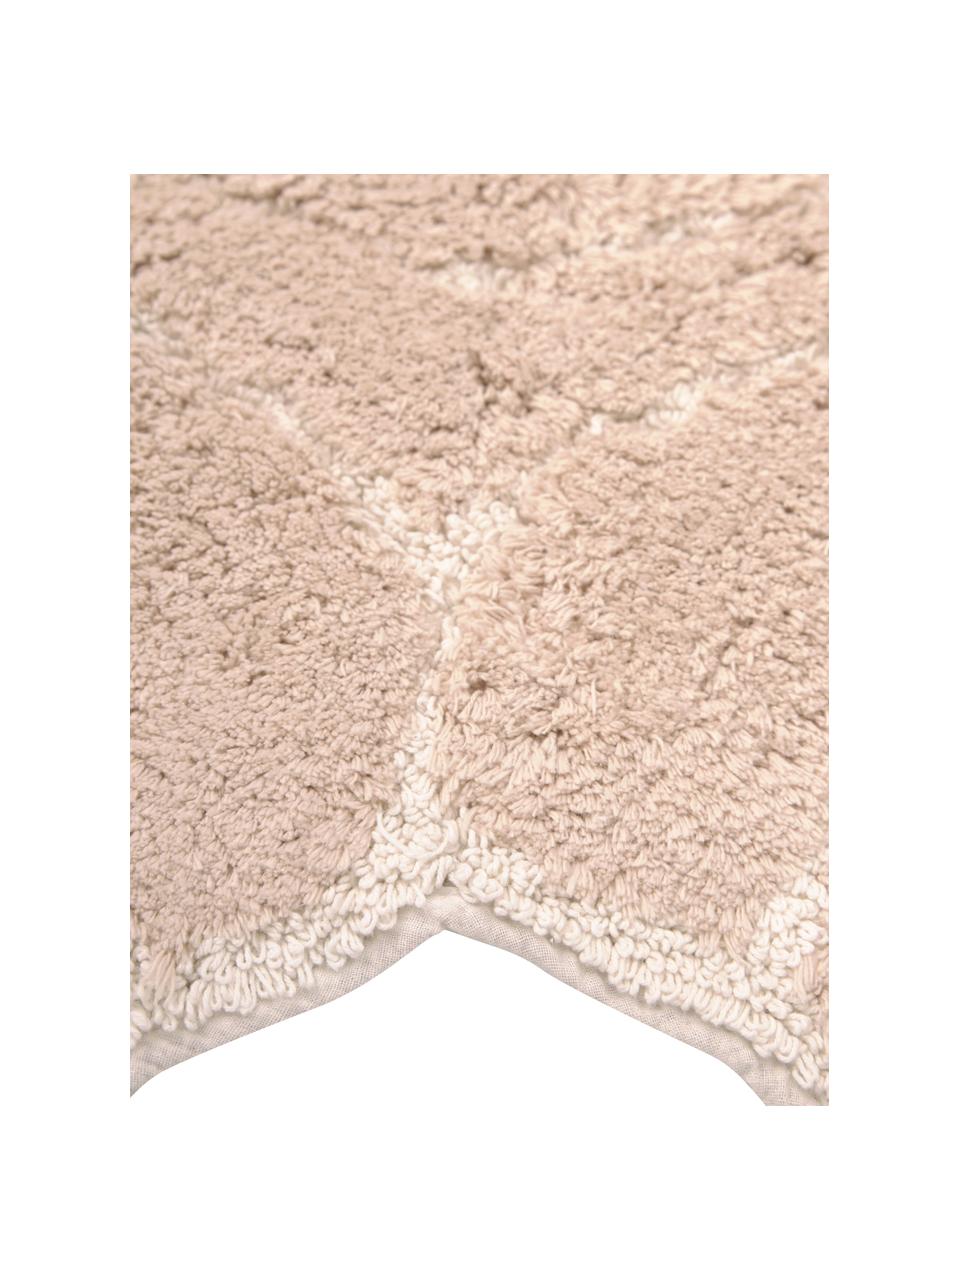 Badvorleger Soft in Ecru aus Baumwolle, 100 % Baumwolle, Ecru, Weiß, B 70 x L 130 cm